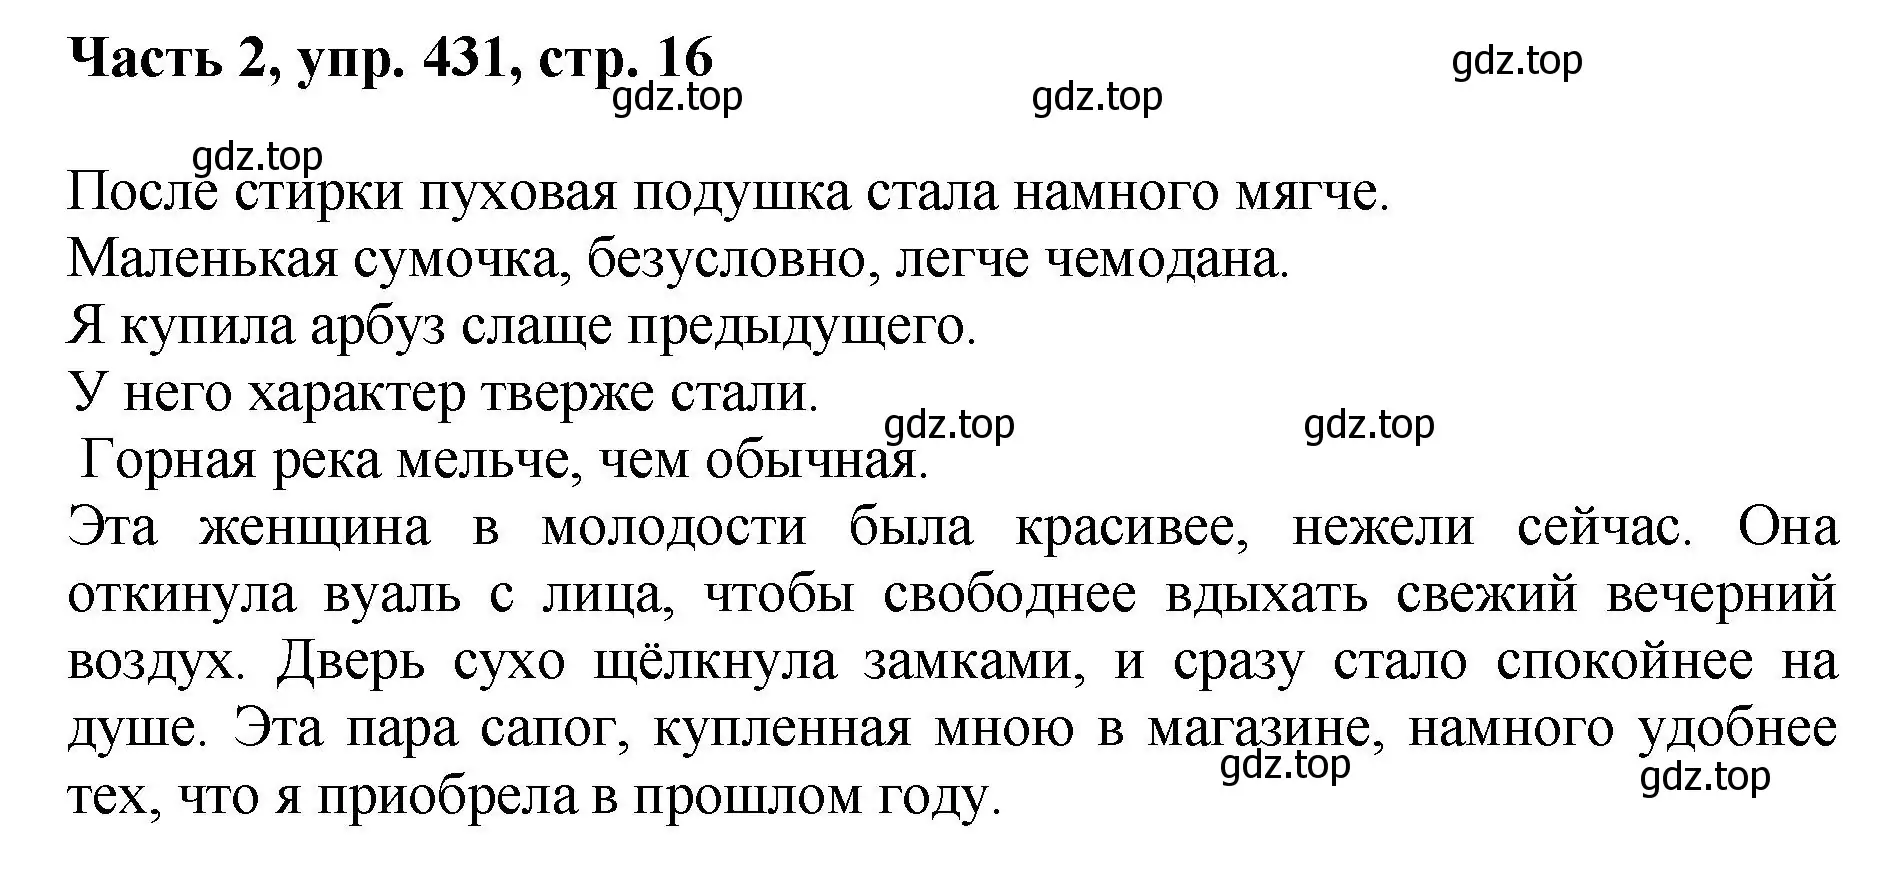 Решение номер 431 (страница 16) гдз по русскому языку 6 класс Баранов, Ладыженская, учебник 2 часть